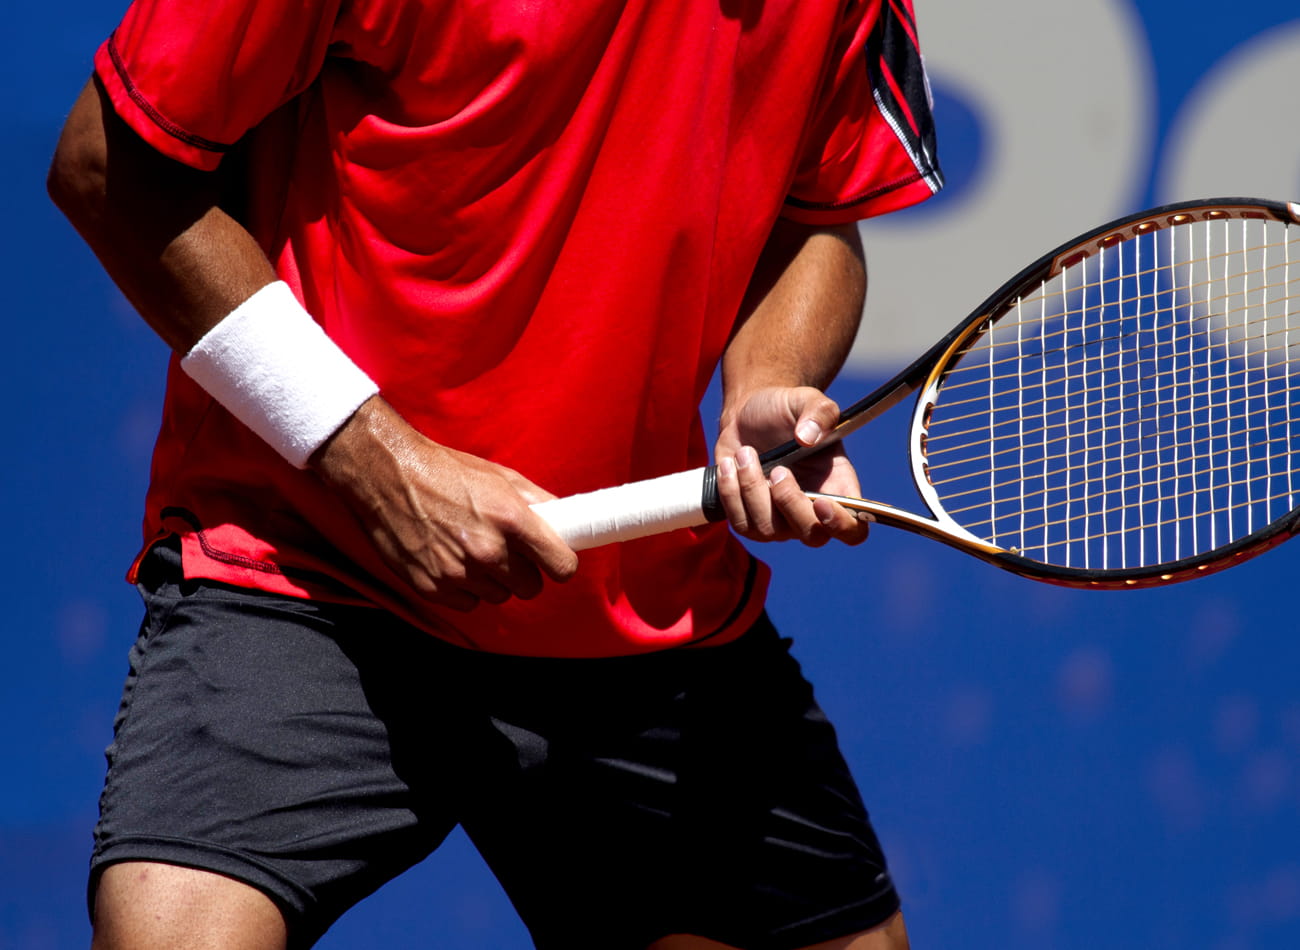 Equipaciones deportivas de tenis y pádel personalizadas y de calidad